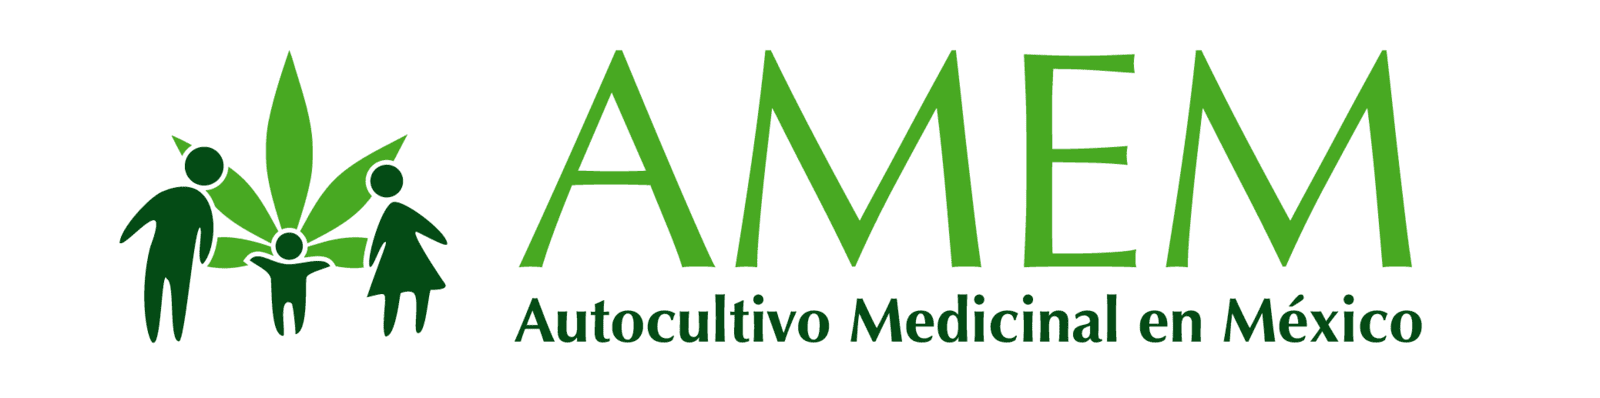 Autocultivo Medicinal en México